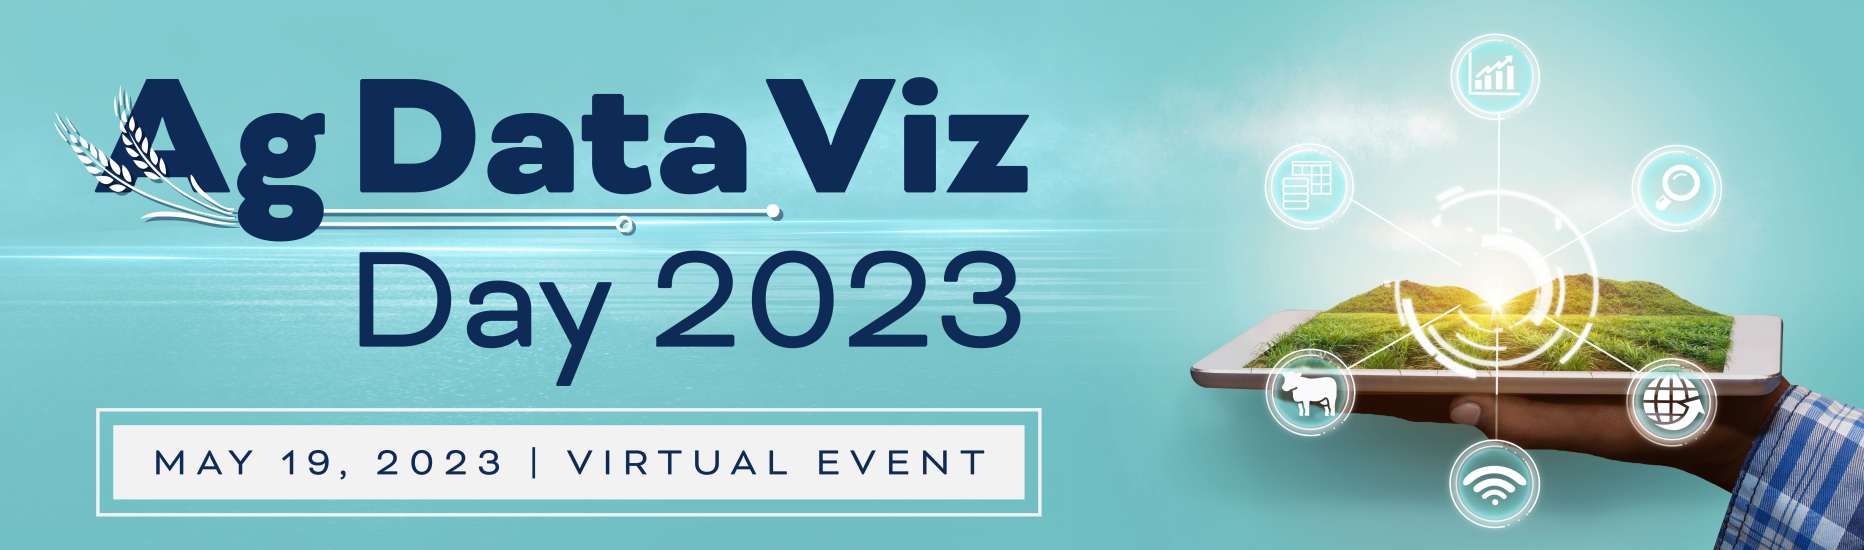 Ag Data Viz Day 2023